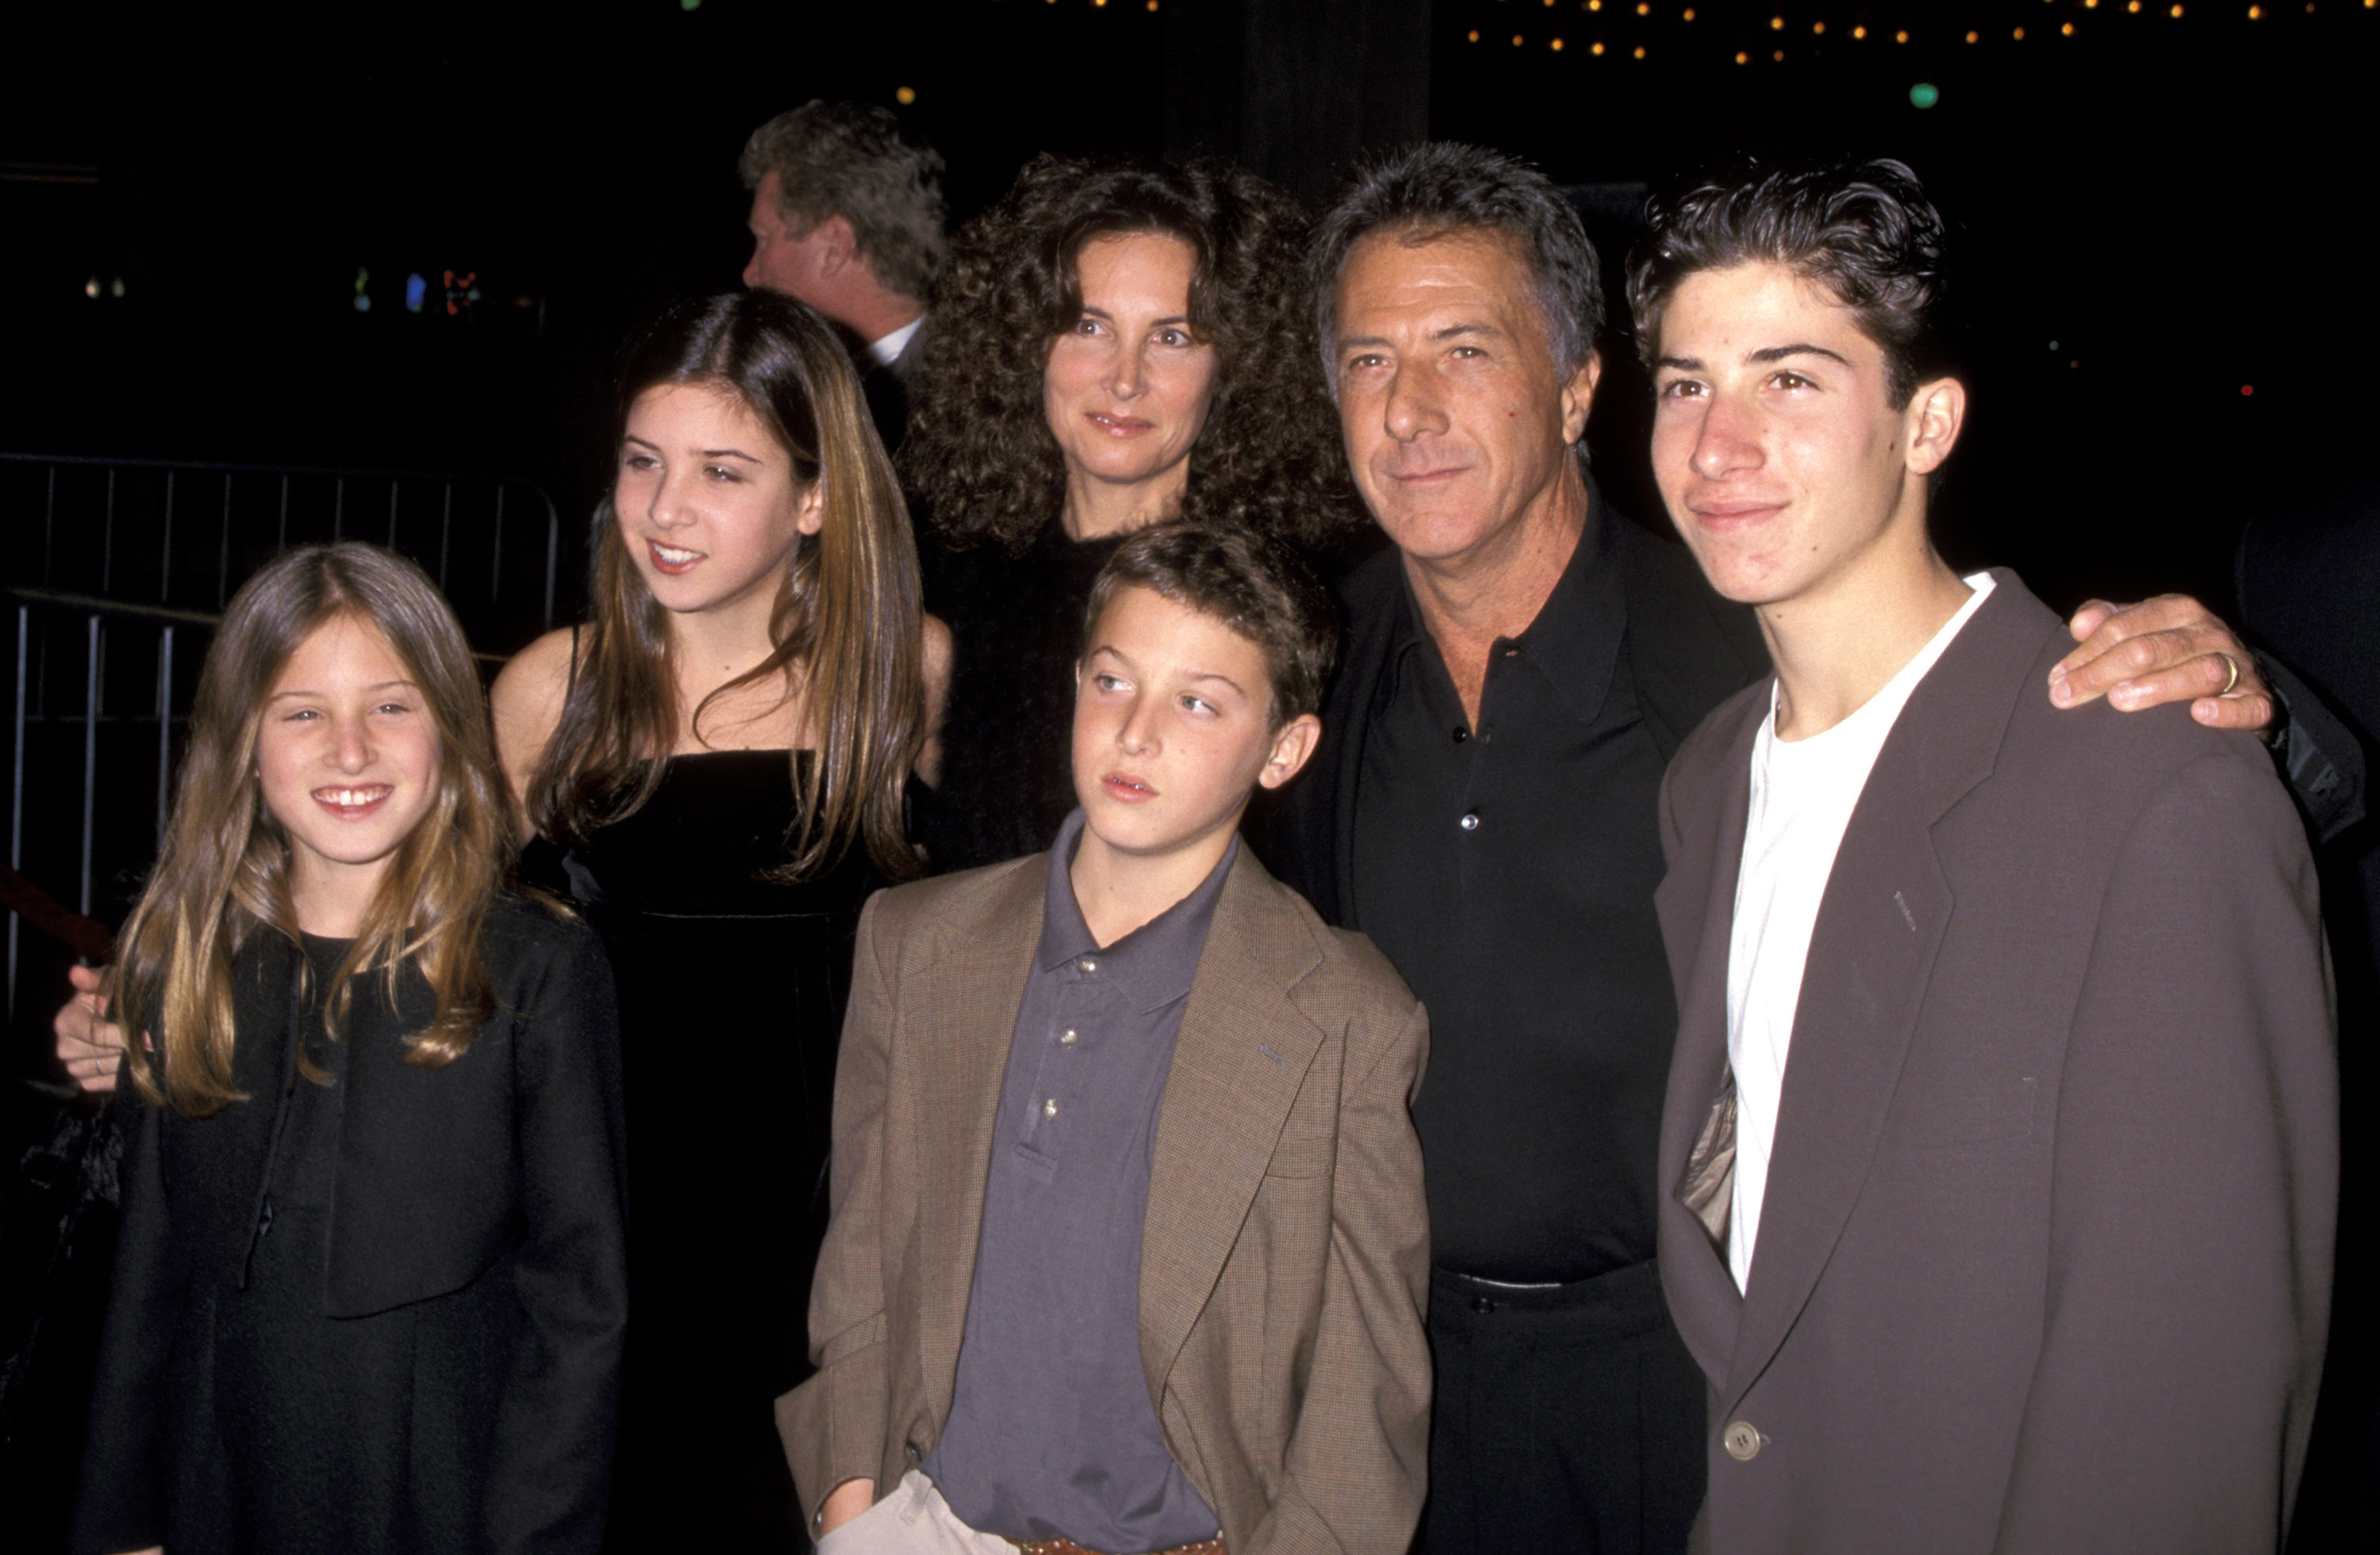 Dustin Hoffman, Lisa Hoffman und ihre Kinder bei der Premiere von "Wag The Dog" in Century City, Kalifornien am 17. Dezember 1997. | Quelle: Getty Images